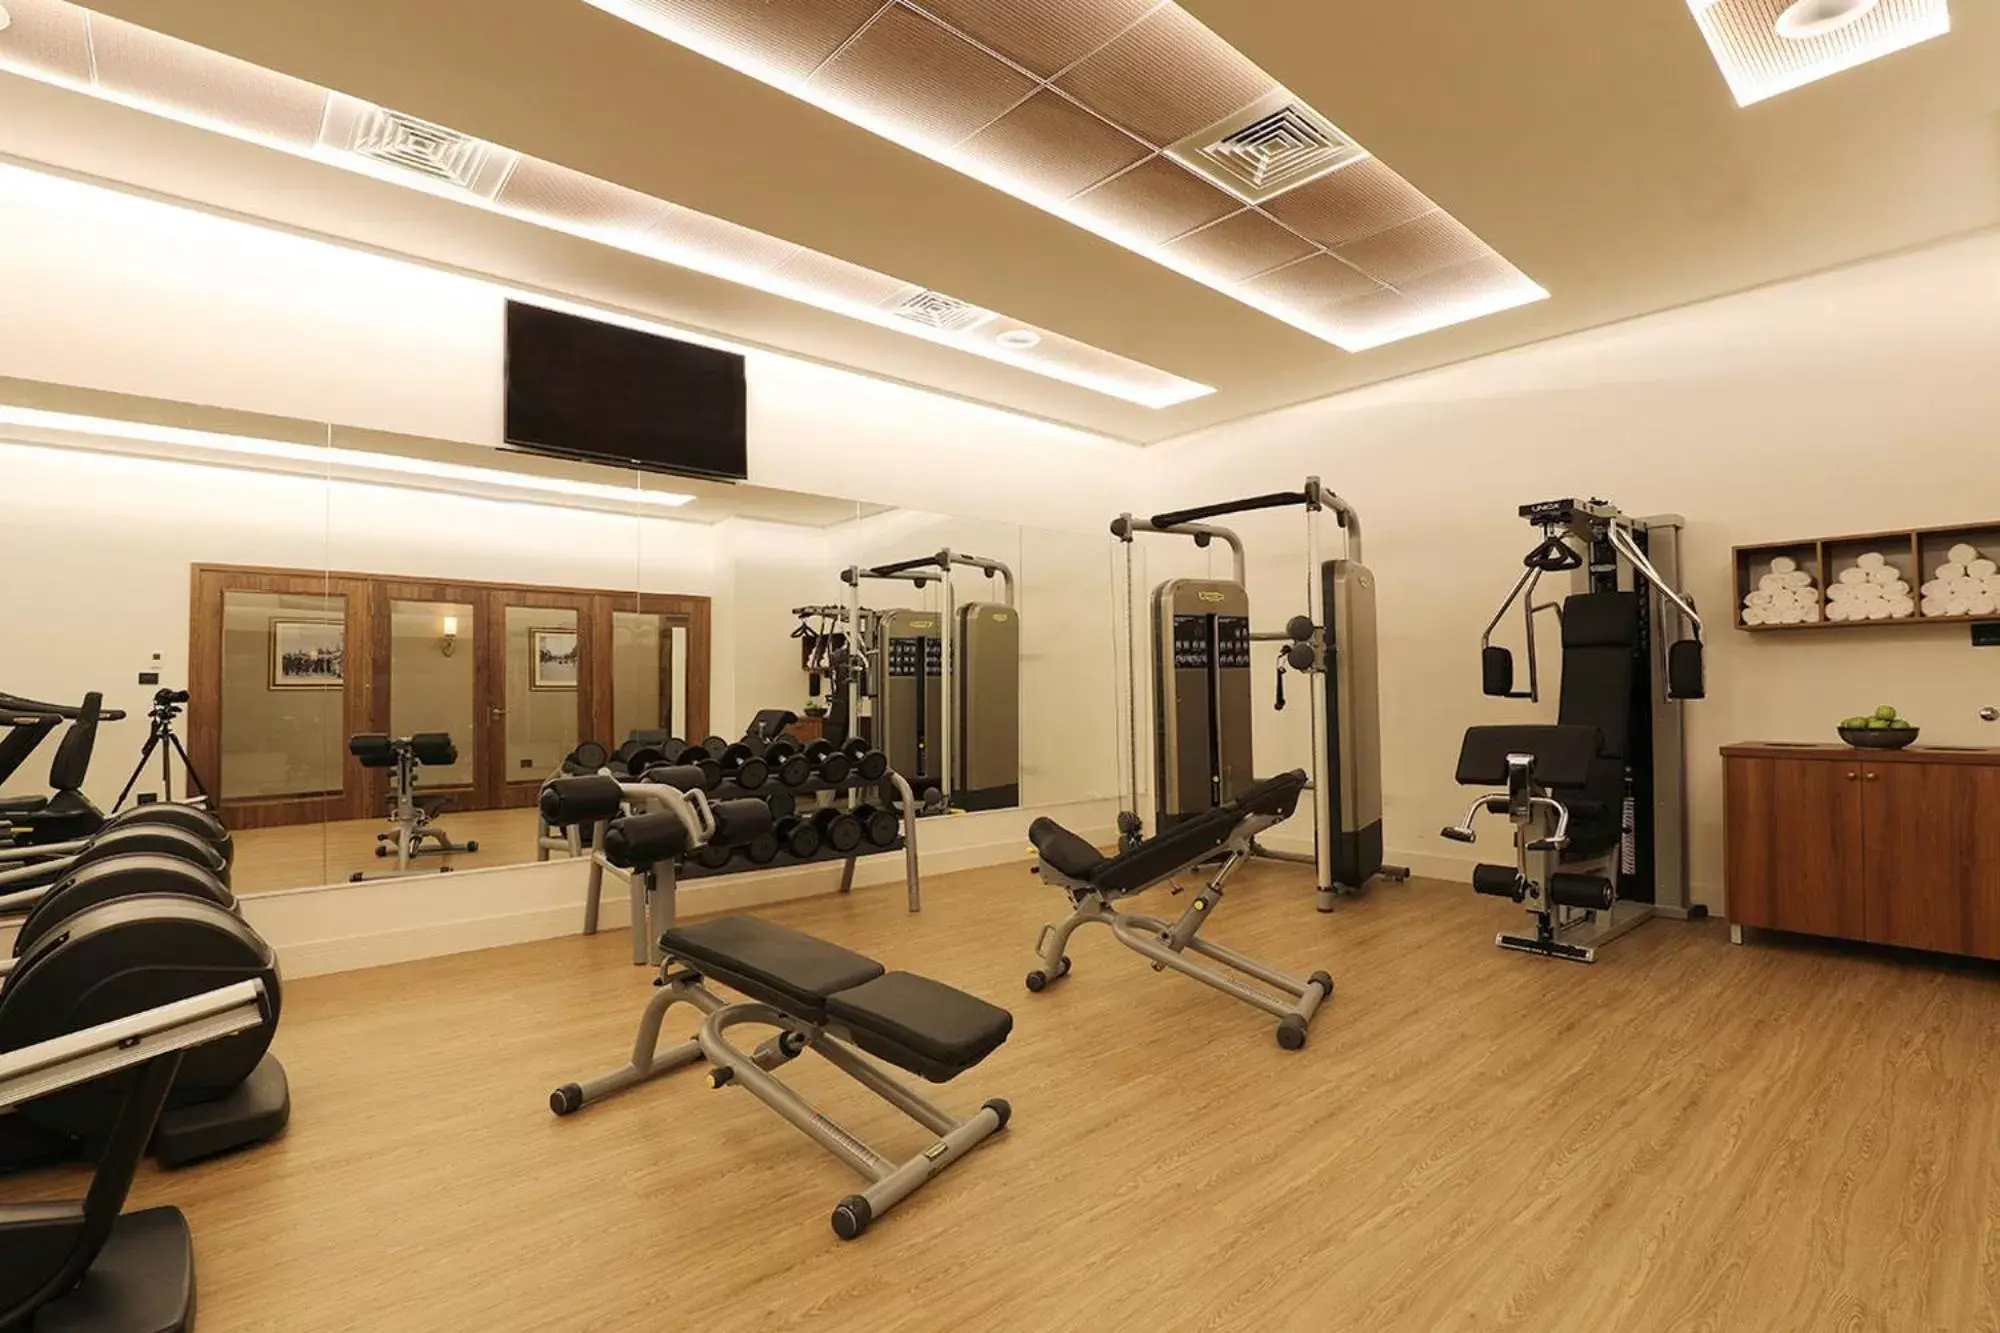 Fitness centre/facilities, Fitness Center/Facilities in Herbert Samuel Opera Tel Aviv